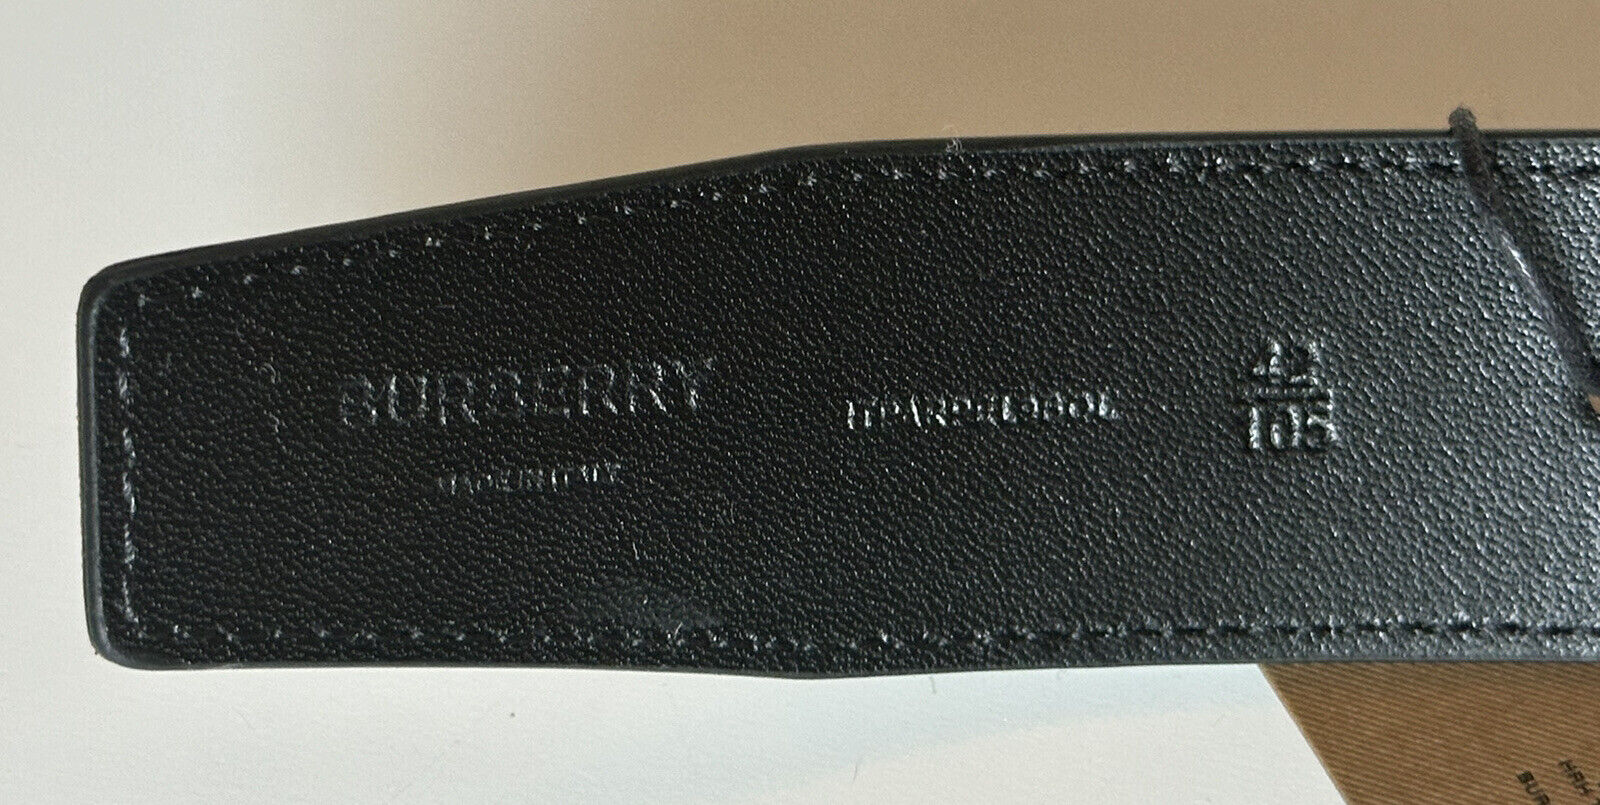 NWT $580 Burberry TB Leather Archive Бежевый двусторонний ремень 42/105 8046568 Италия